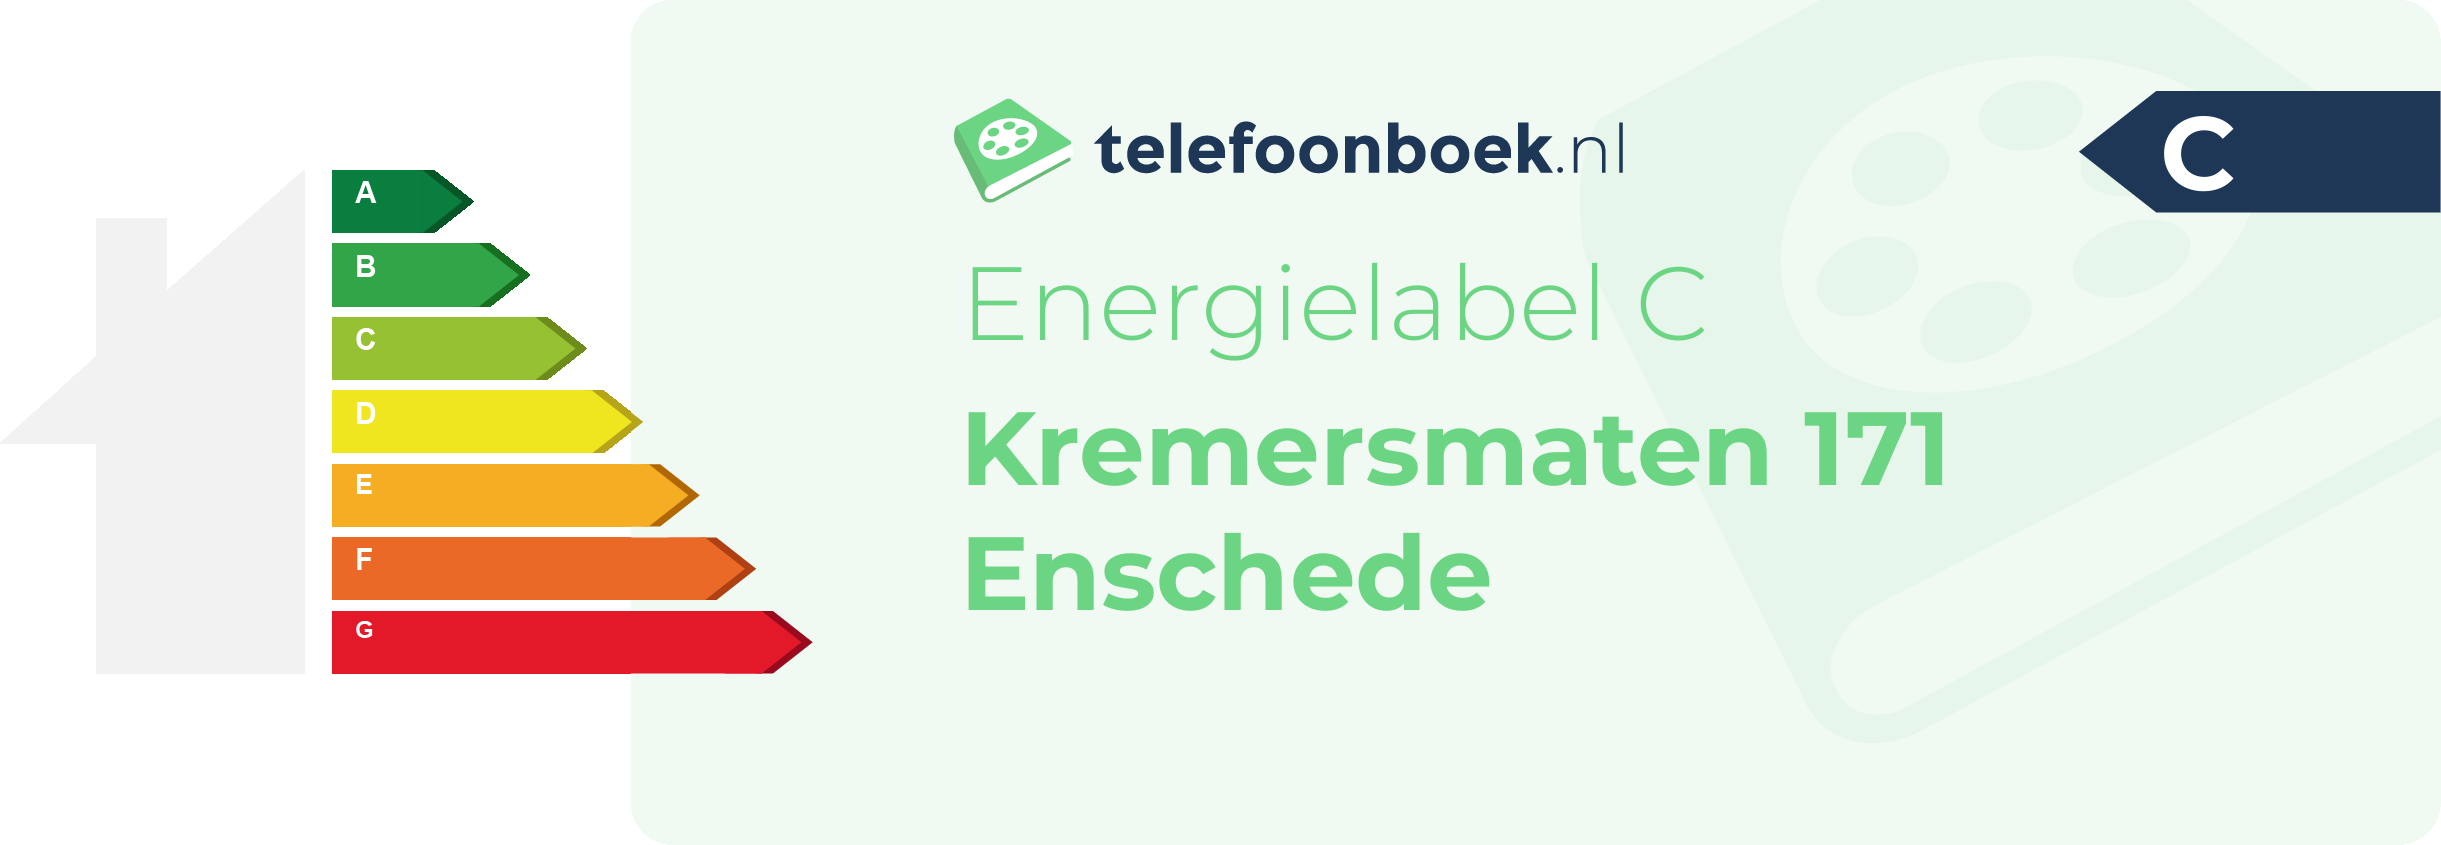 Energielabel Kremersmaten 171 Enschede